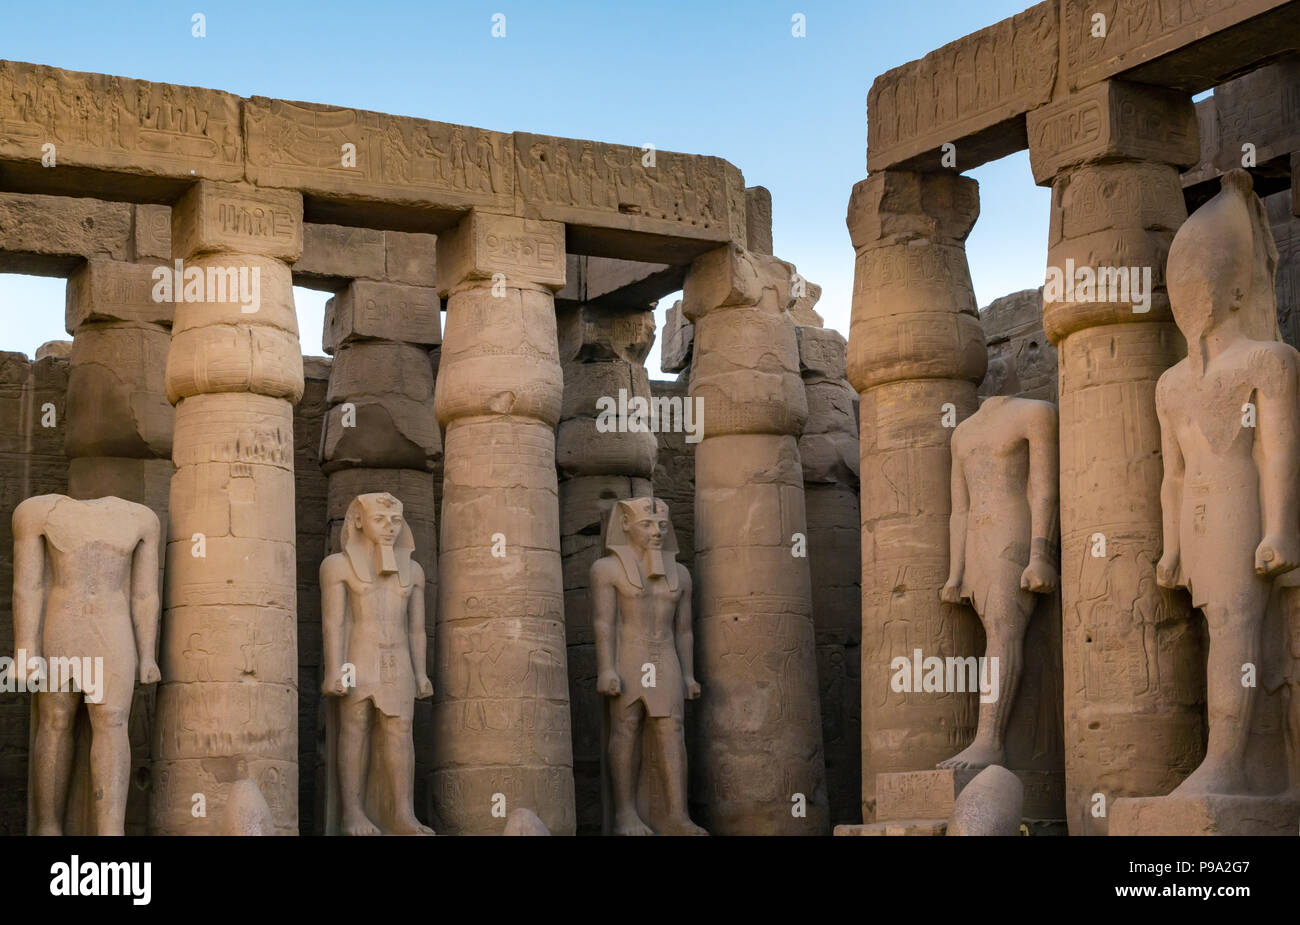 Ramsès II grande cour avec des colonnes de papyrus colonnade et colosses de chiffres, le temple de Louxor, Louxor, Egypte, Afrique du Sud Banque D'Images